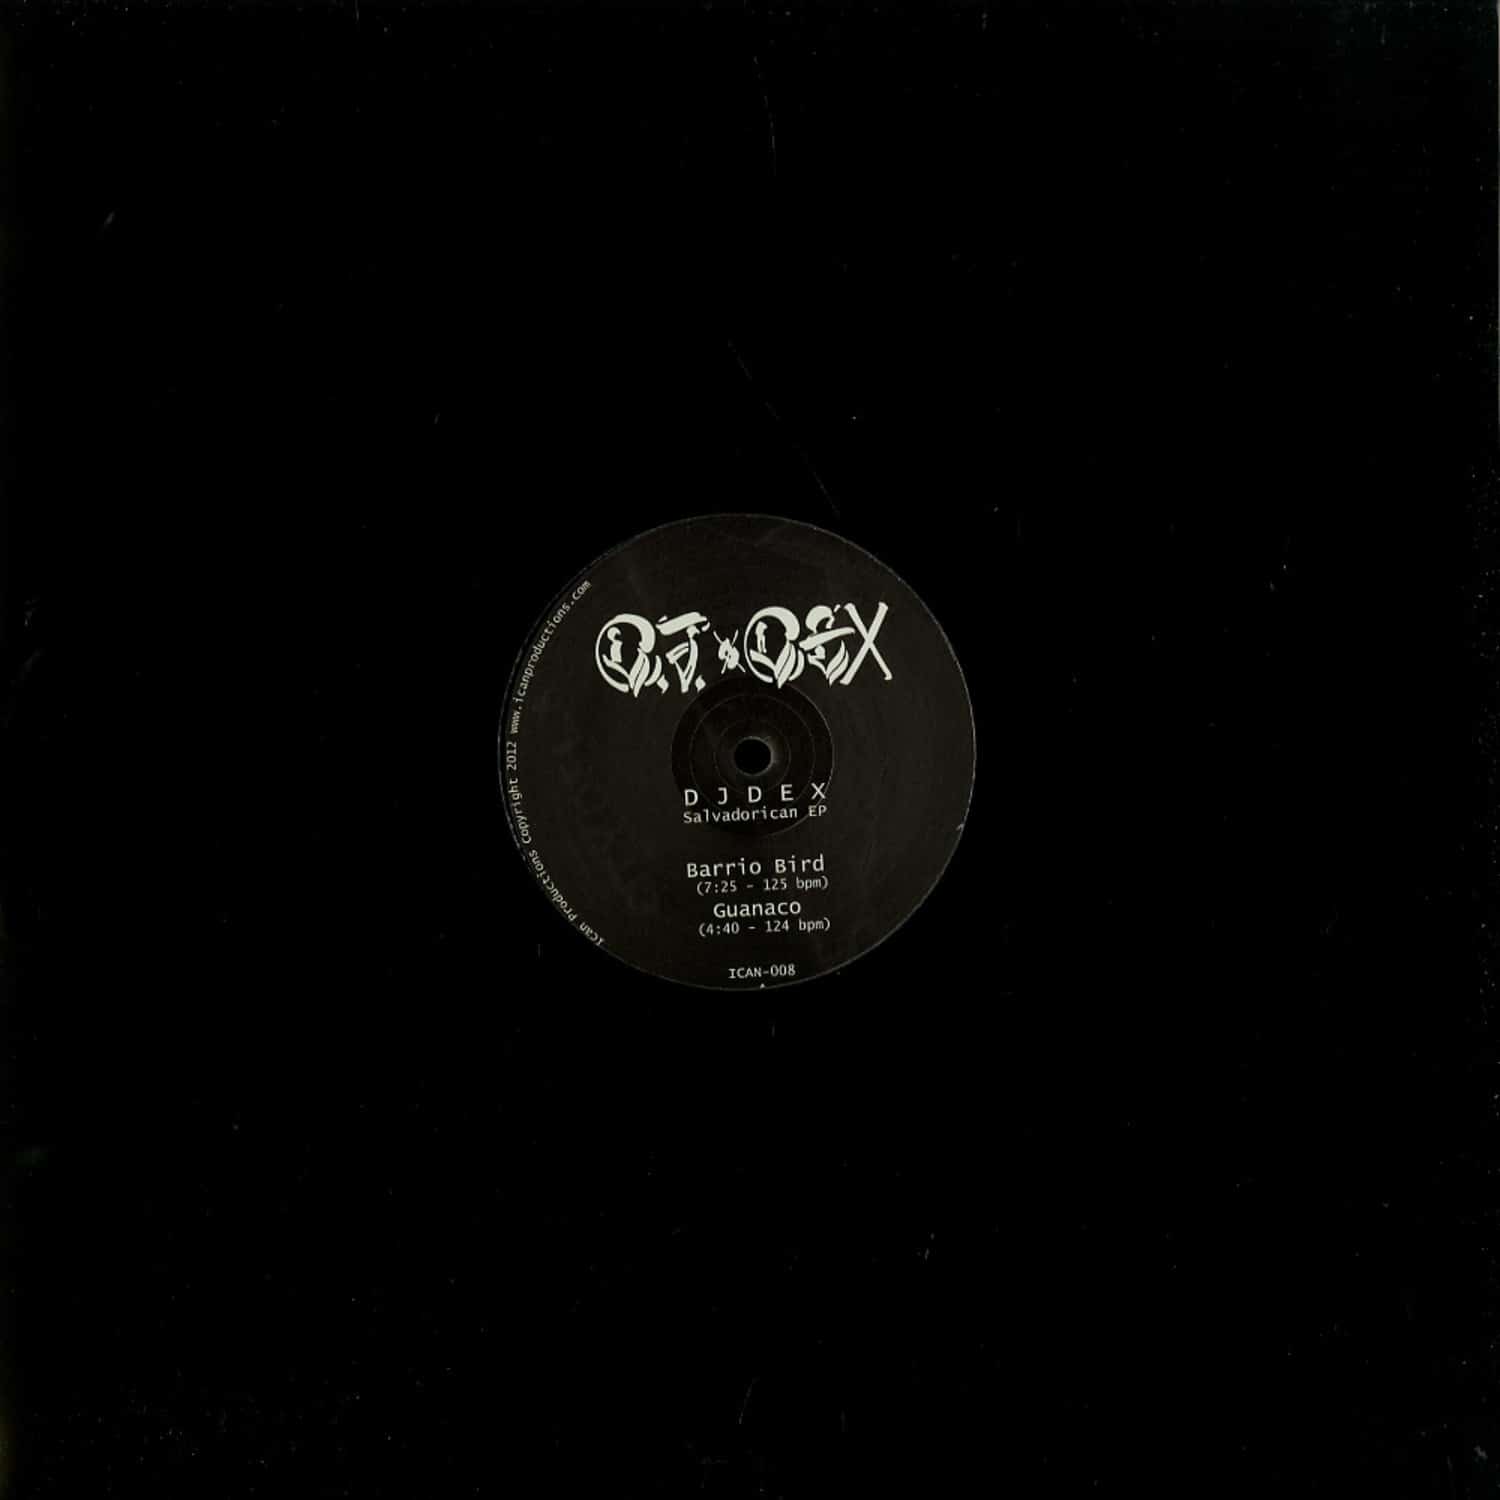 DJ Dex - SALVADORICAN EP